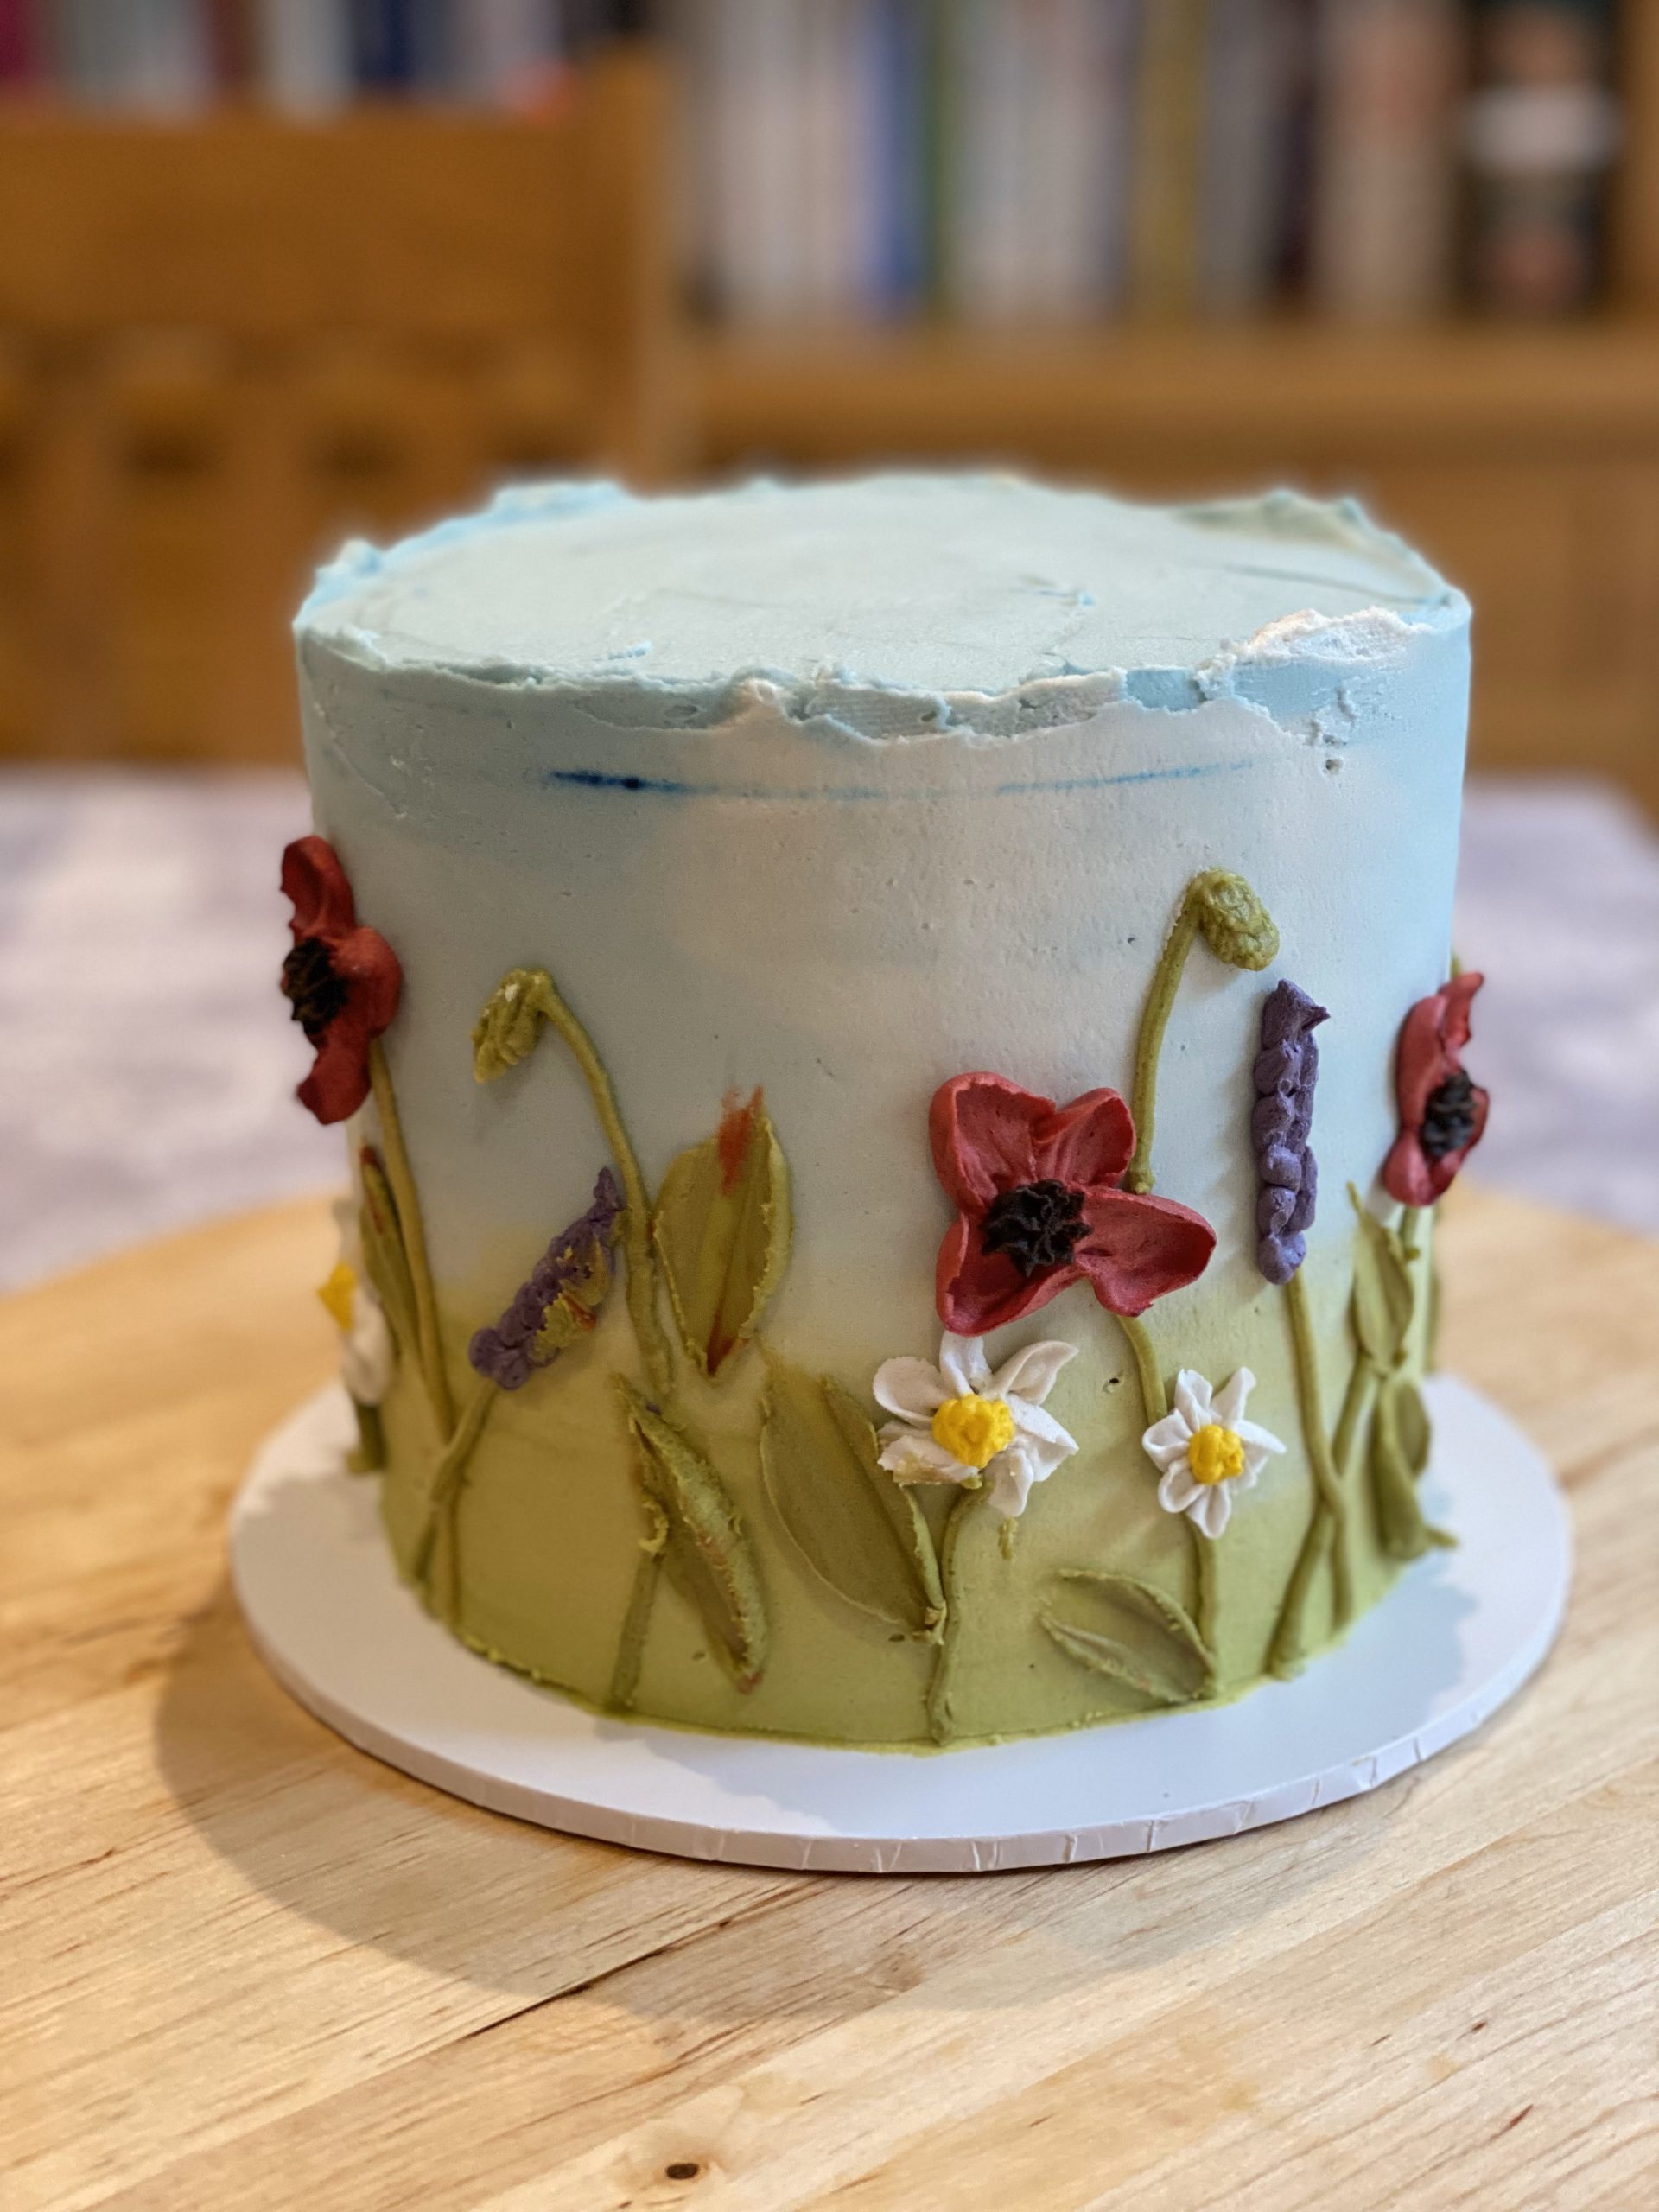 A wildflower celebration cake